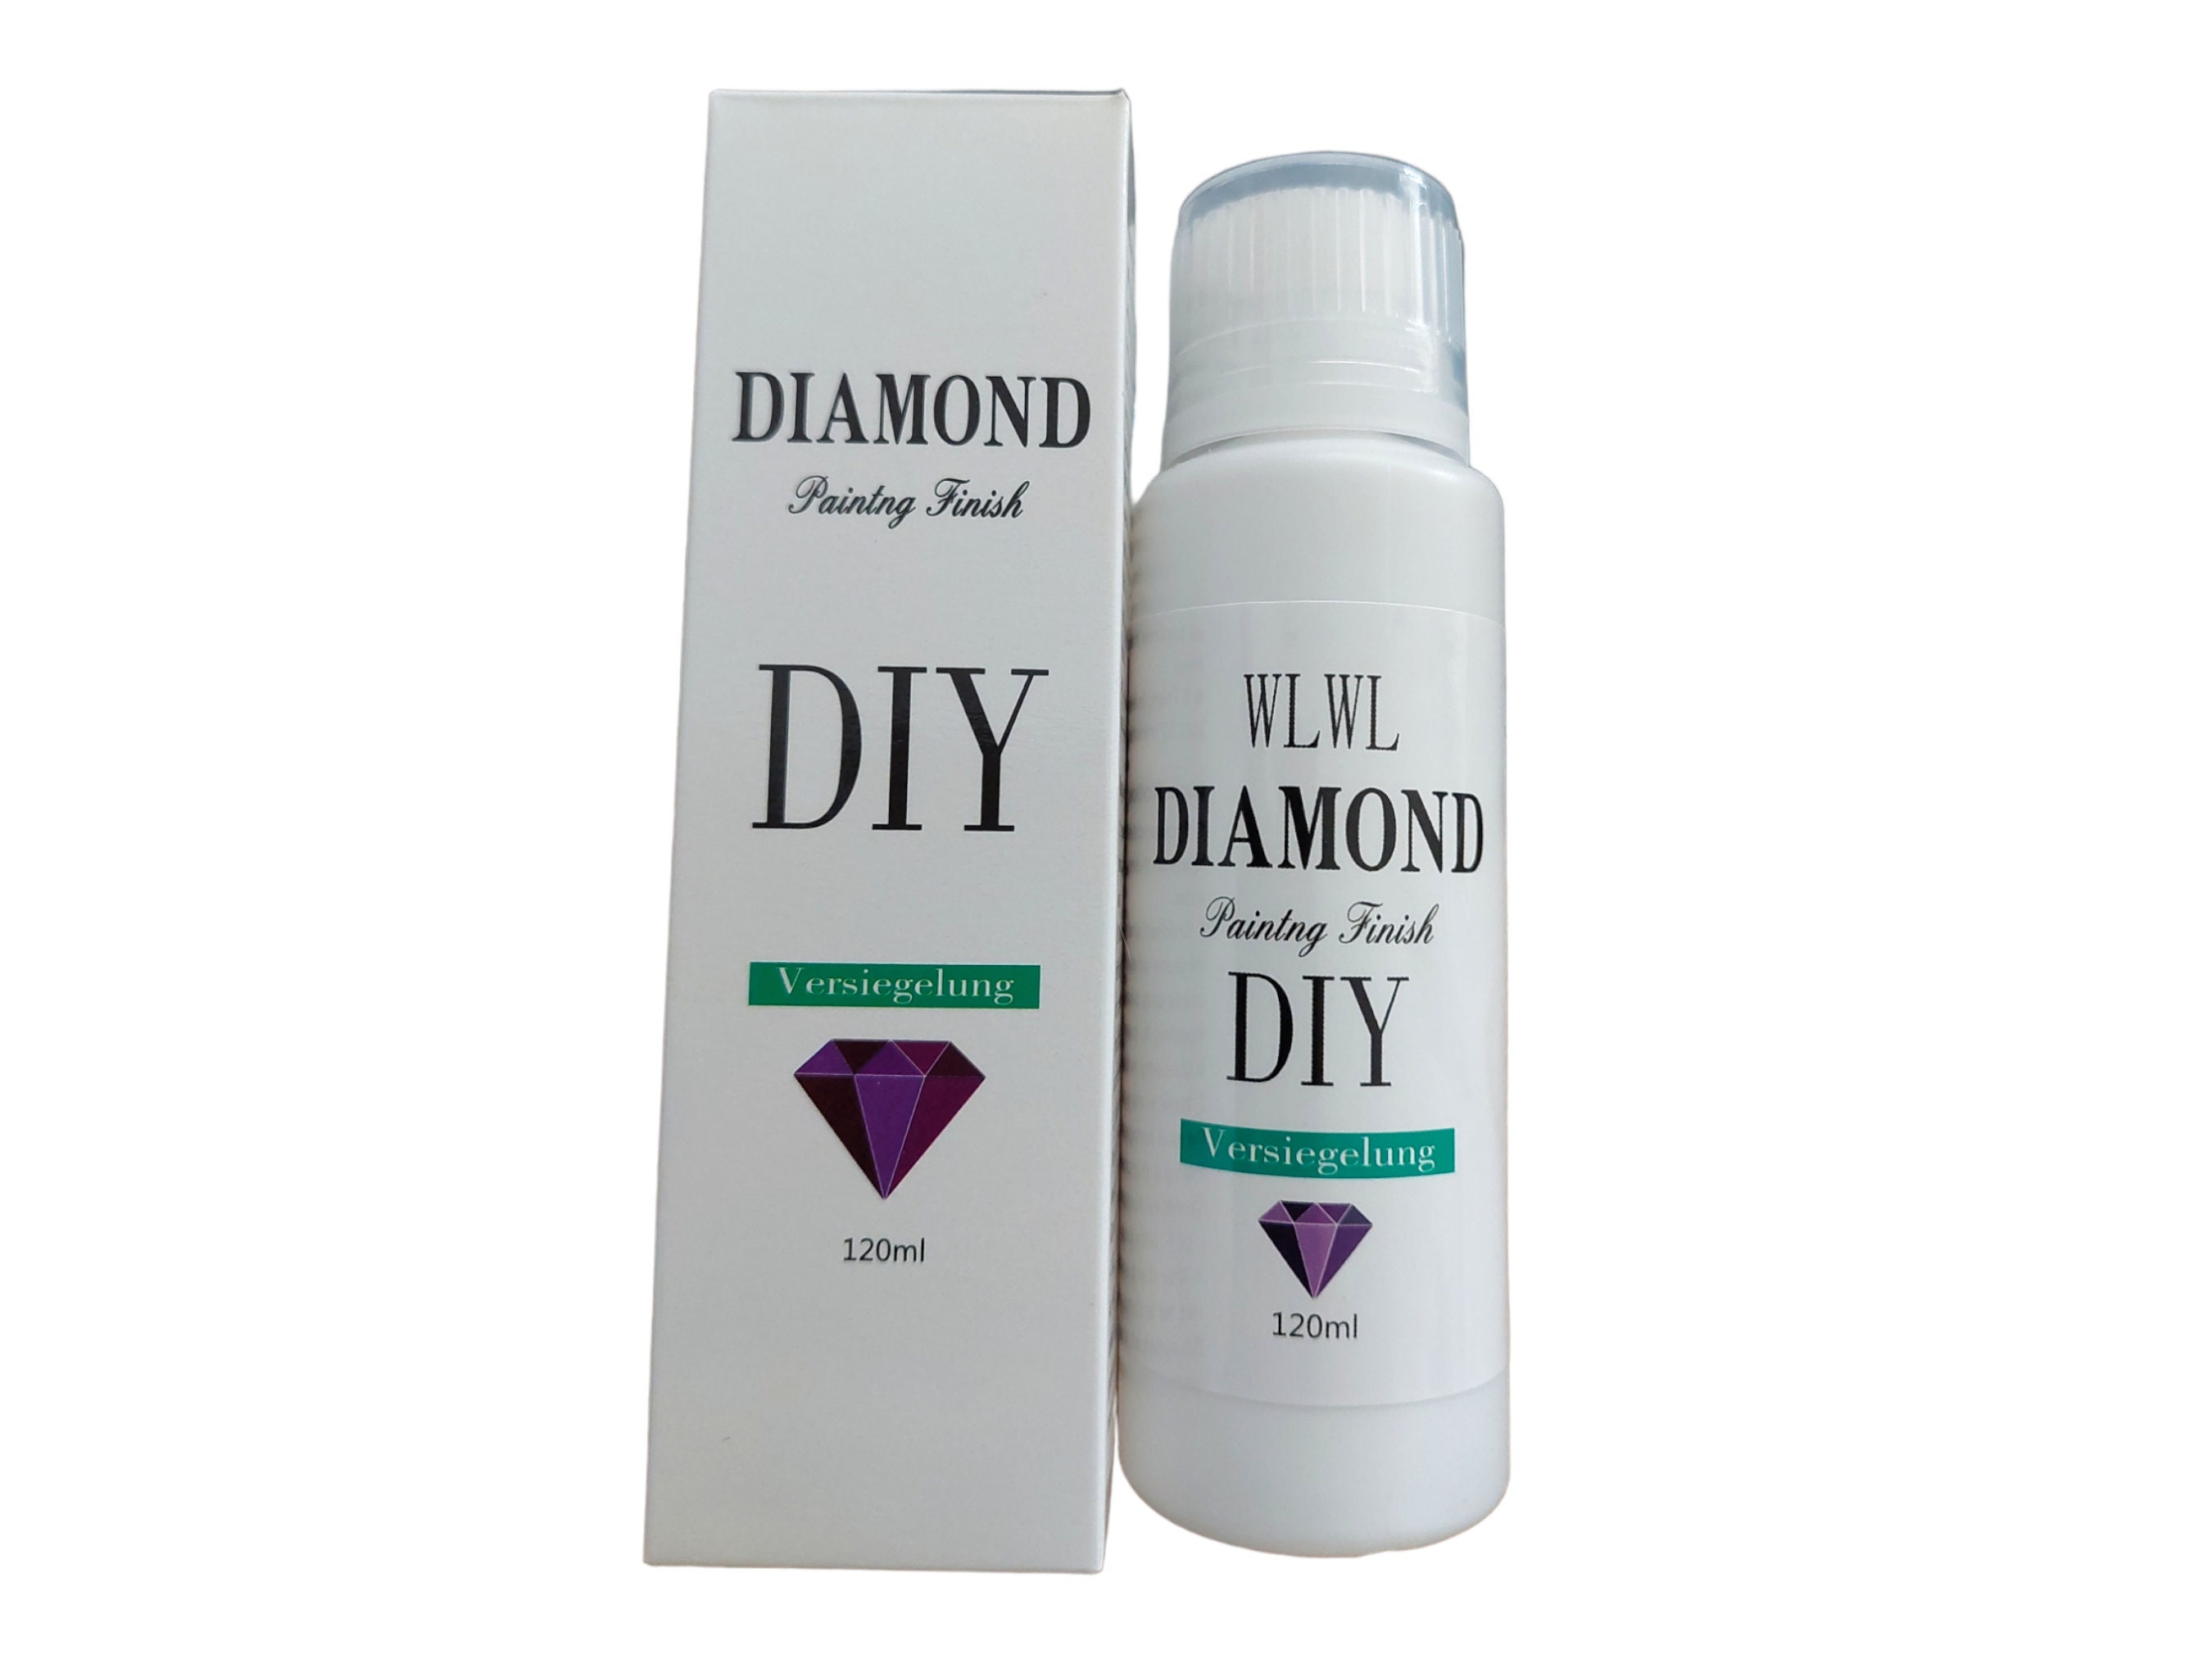 240ML/8 OZ Diamond Painting Sealer 5D Diamond Painting Sealer Glue, Diamond  Art